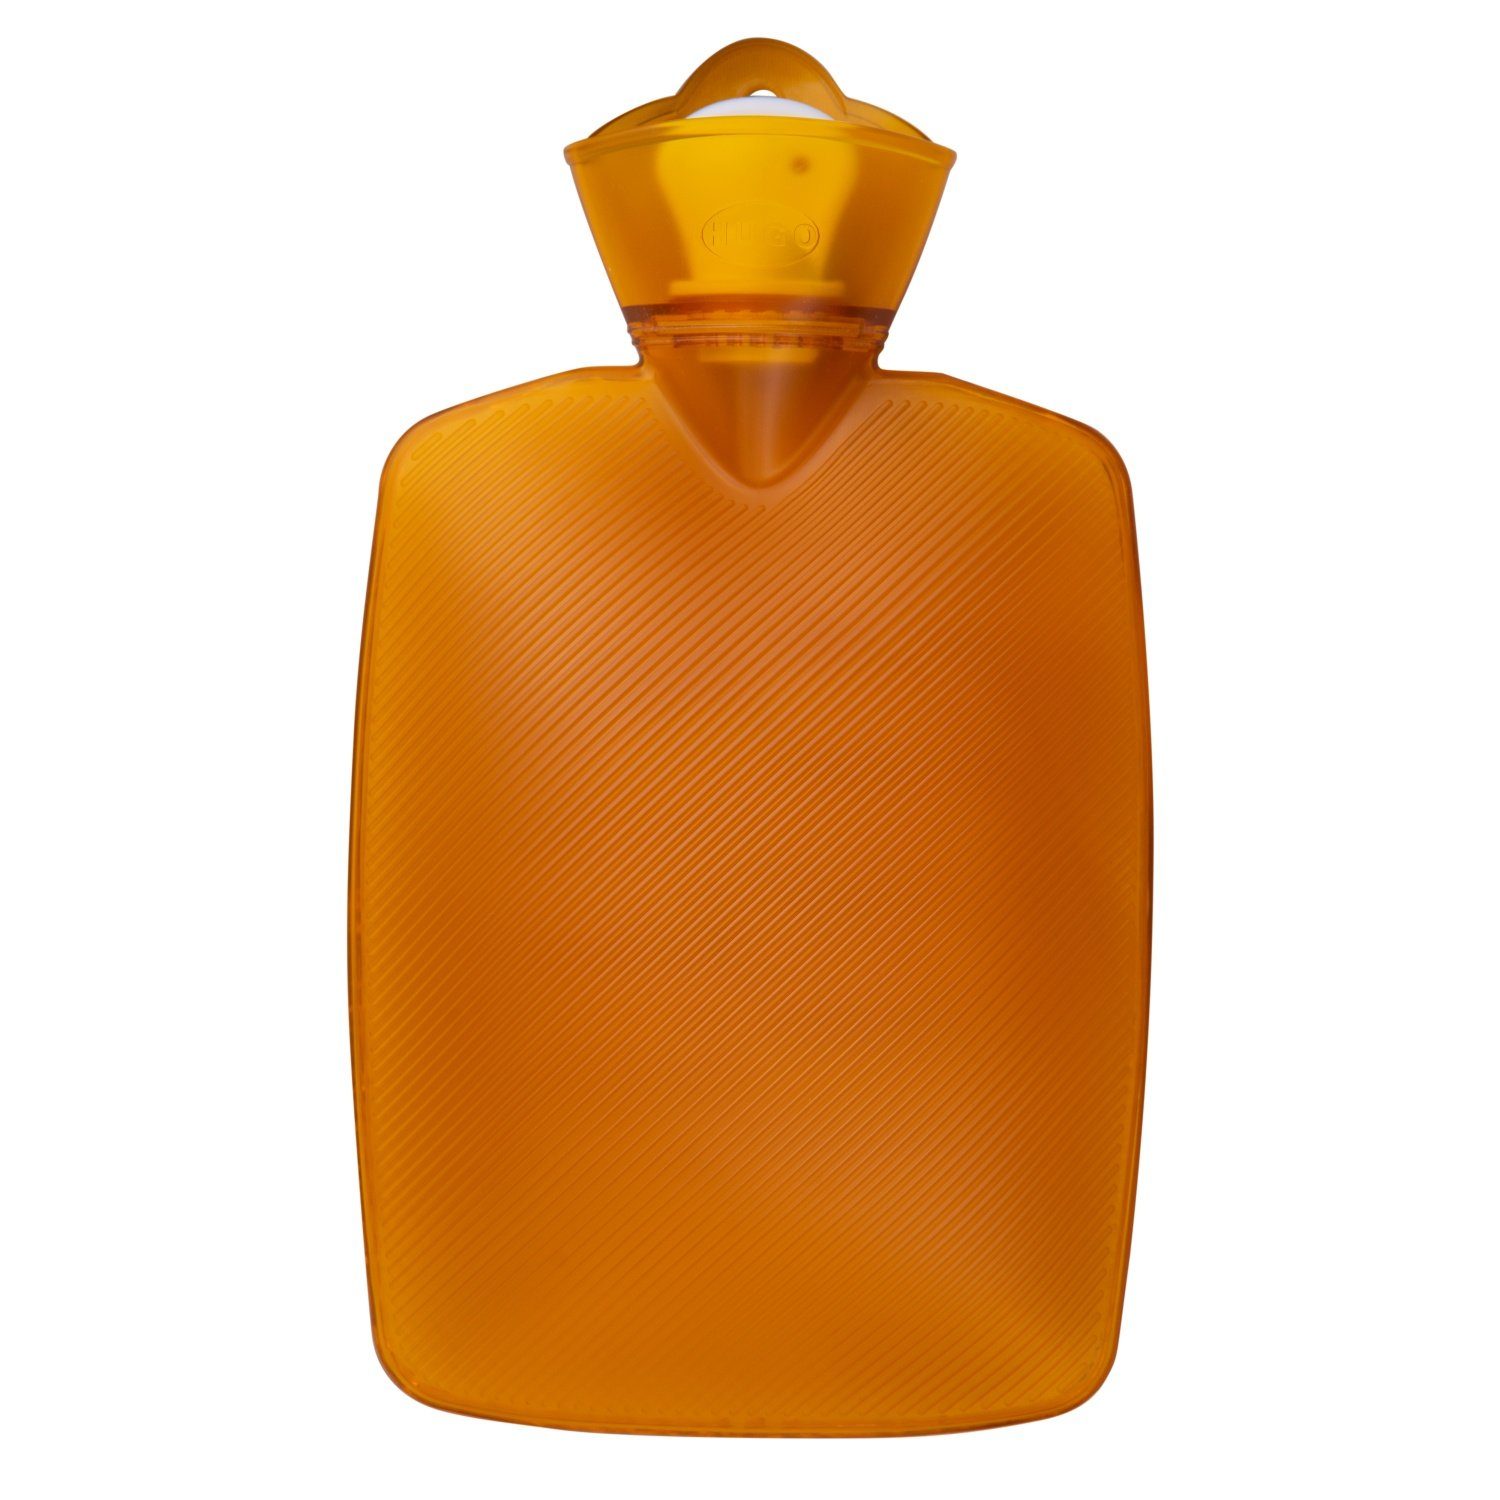 Hugo Frosch Wärmflasche Auslaufsicherer Bauchwärmer 1.8L in Orange, (33x19.5x4.5 cm), Wohltuende Wärme, tragbare Wärmflasche ohne Phthalate, Made in Germany